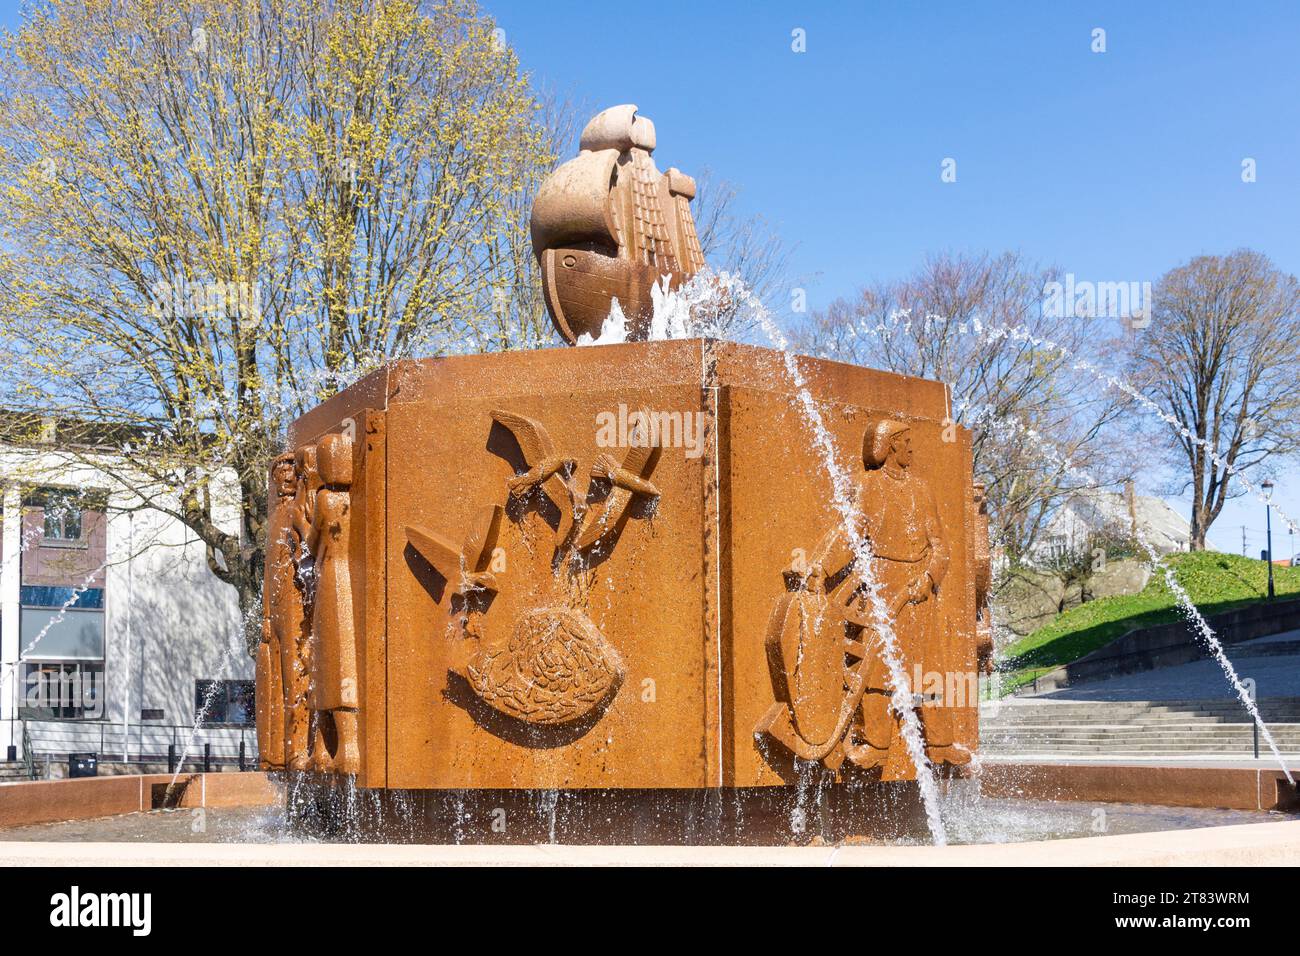 Por og hav fontenen (fuente), Rådhusplassen (Plaza del Ayuntamiento), Haugesund, Condado de Rogaland, Noruega Foto de stock